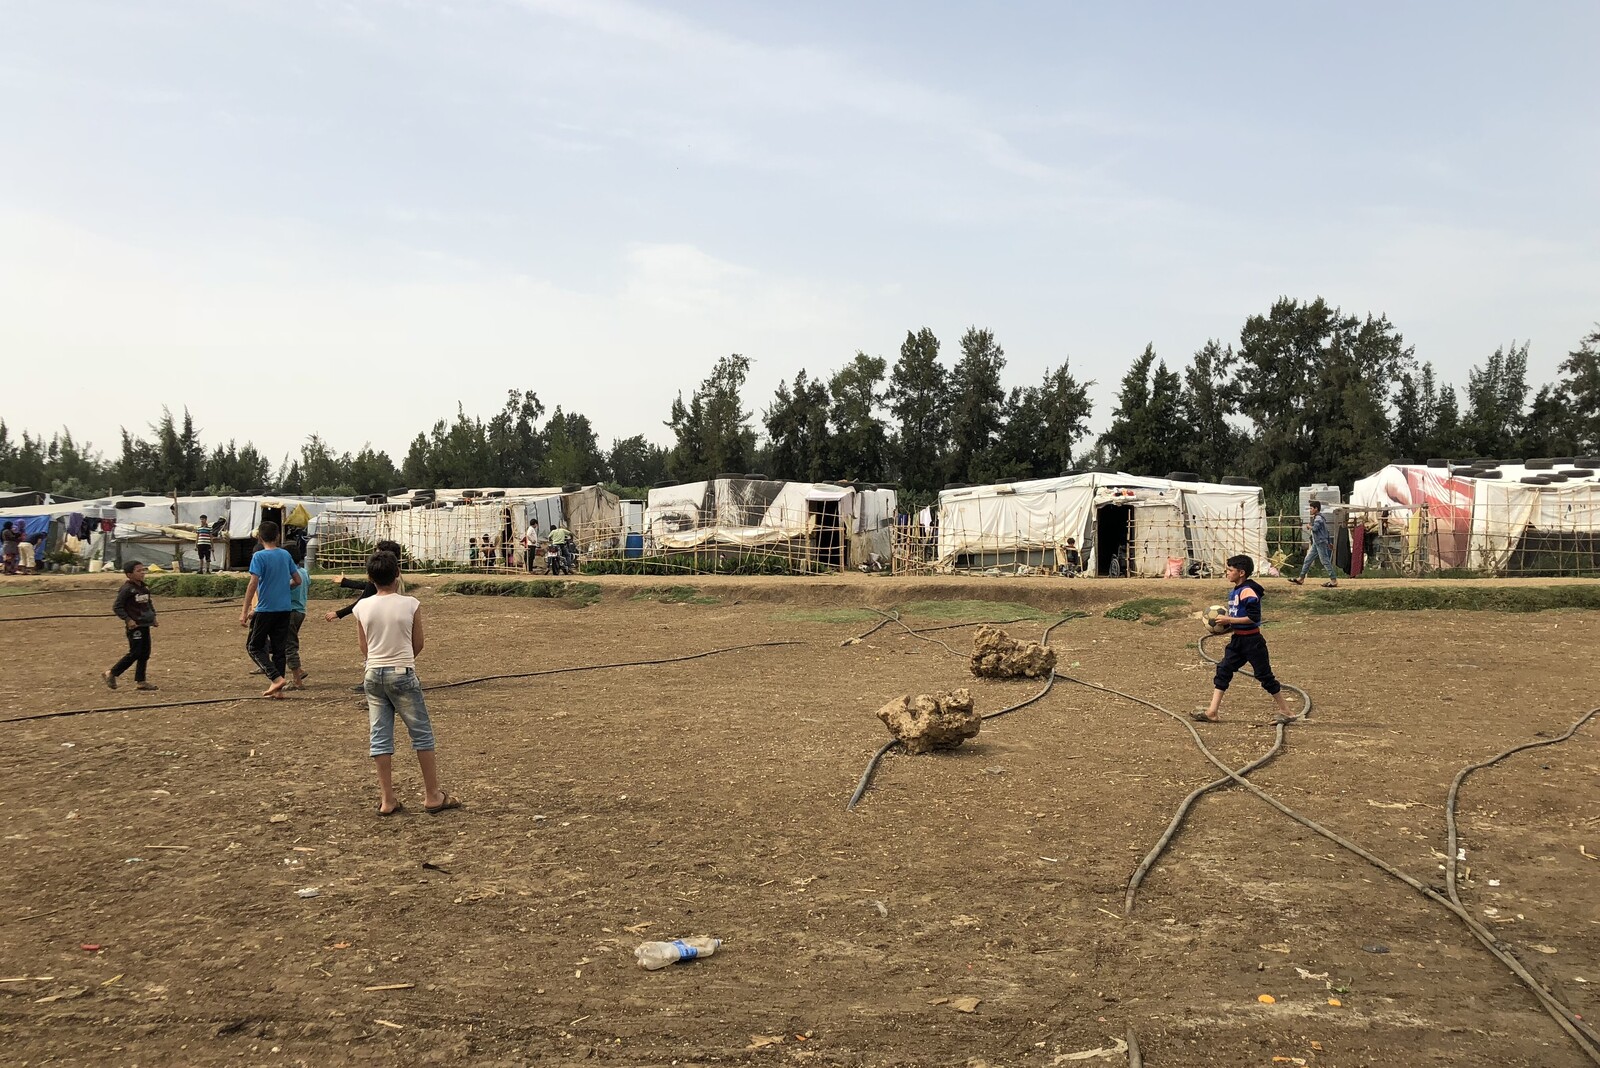 Viele syrische Flüchtlinge leben in informellen Camps, weil sie sich nicht leisten können eine Wohnung zu mieten. Familien leben in Zelten aus Plastikplanen - der Raum ist eng. NGOs helfen den Menschen das Leben ein bisschen würdevoller zu machen.